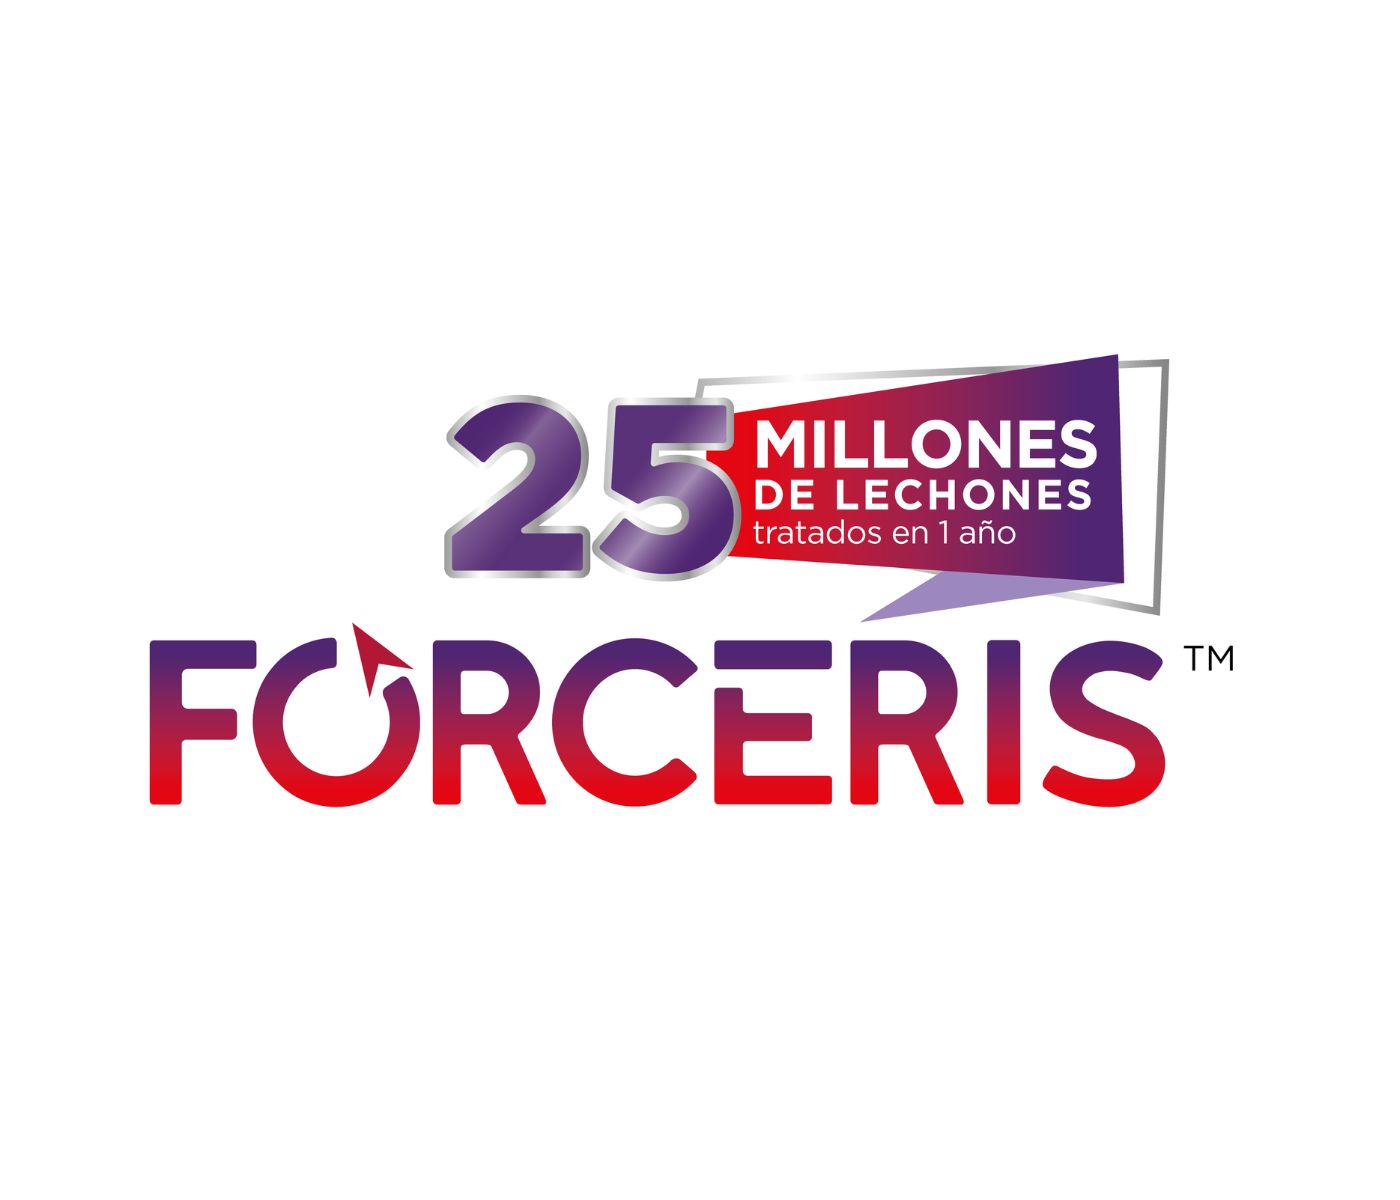 Forceris celebra 5 años “forcerizando” a 25 millones de lechones